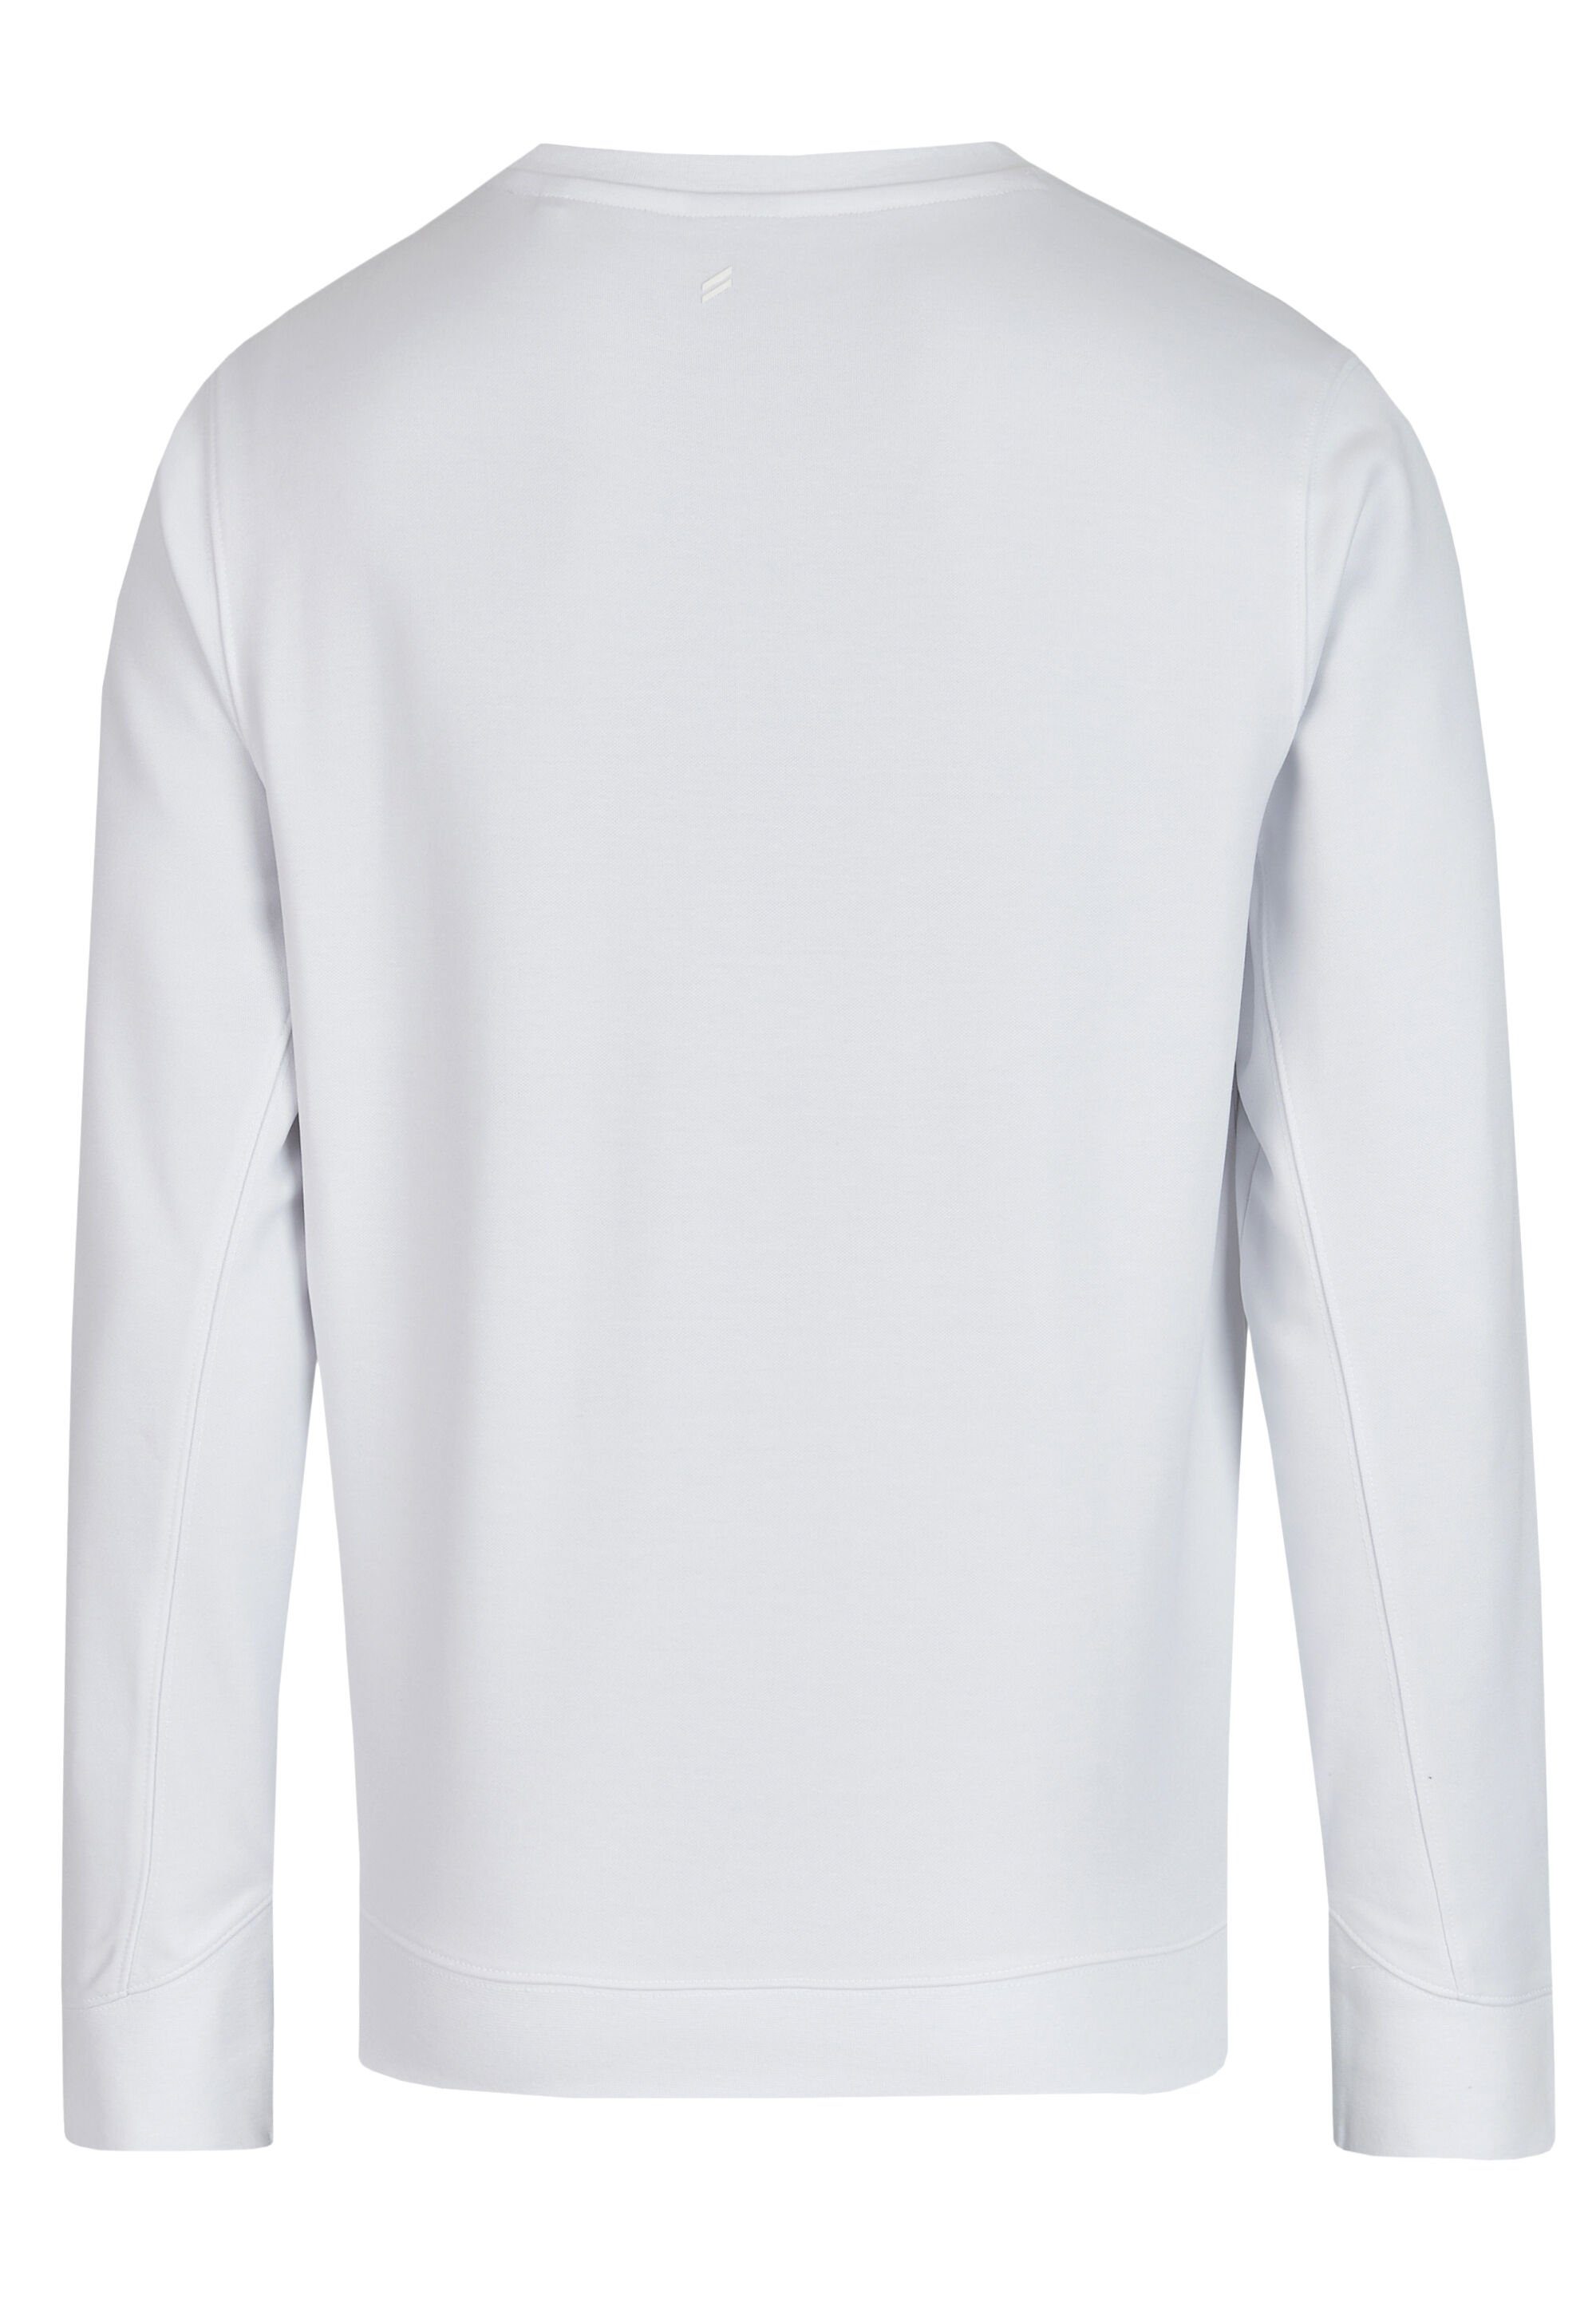 HECHTER PARIS Sweatshirt mit Logo-Print white